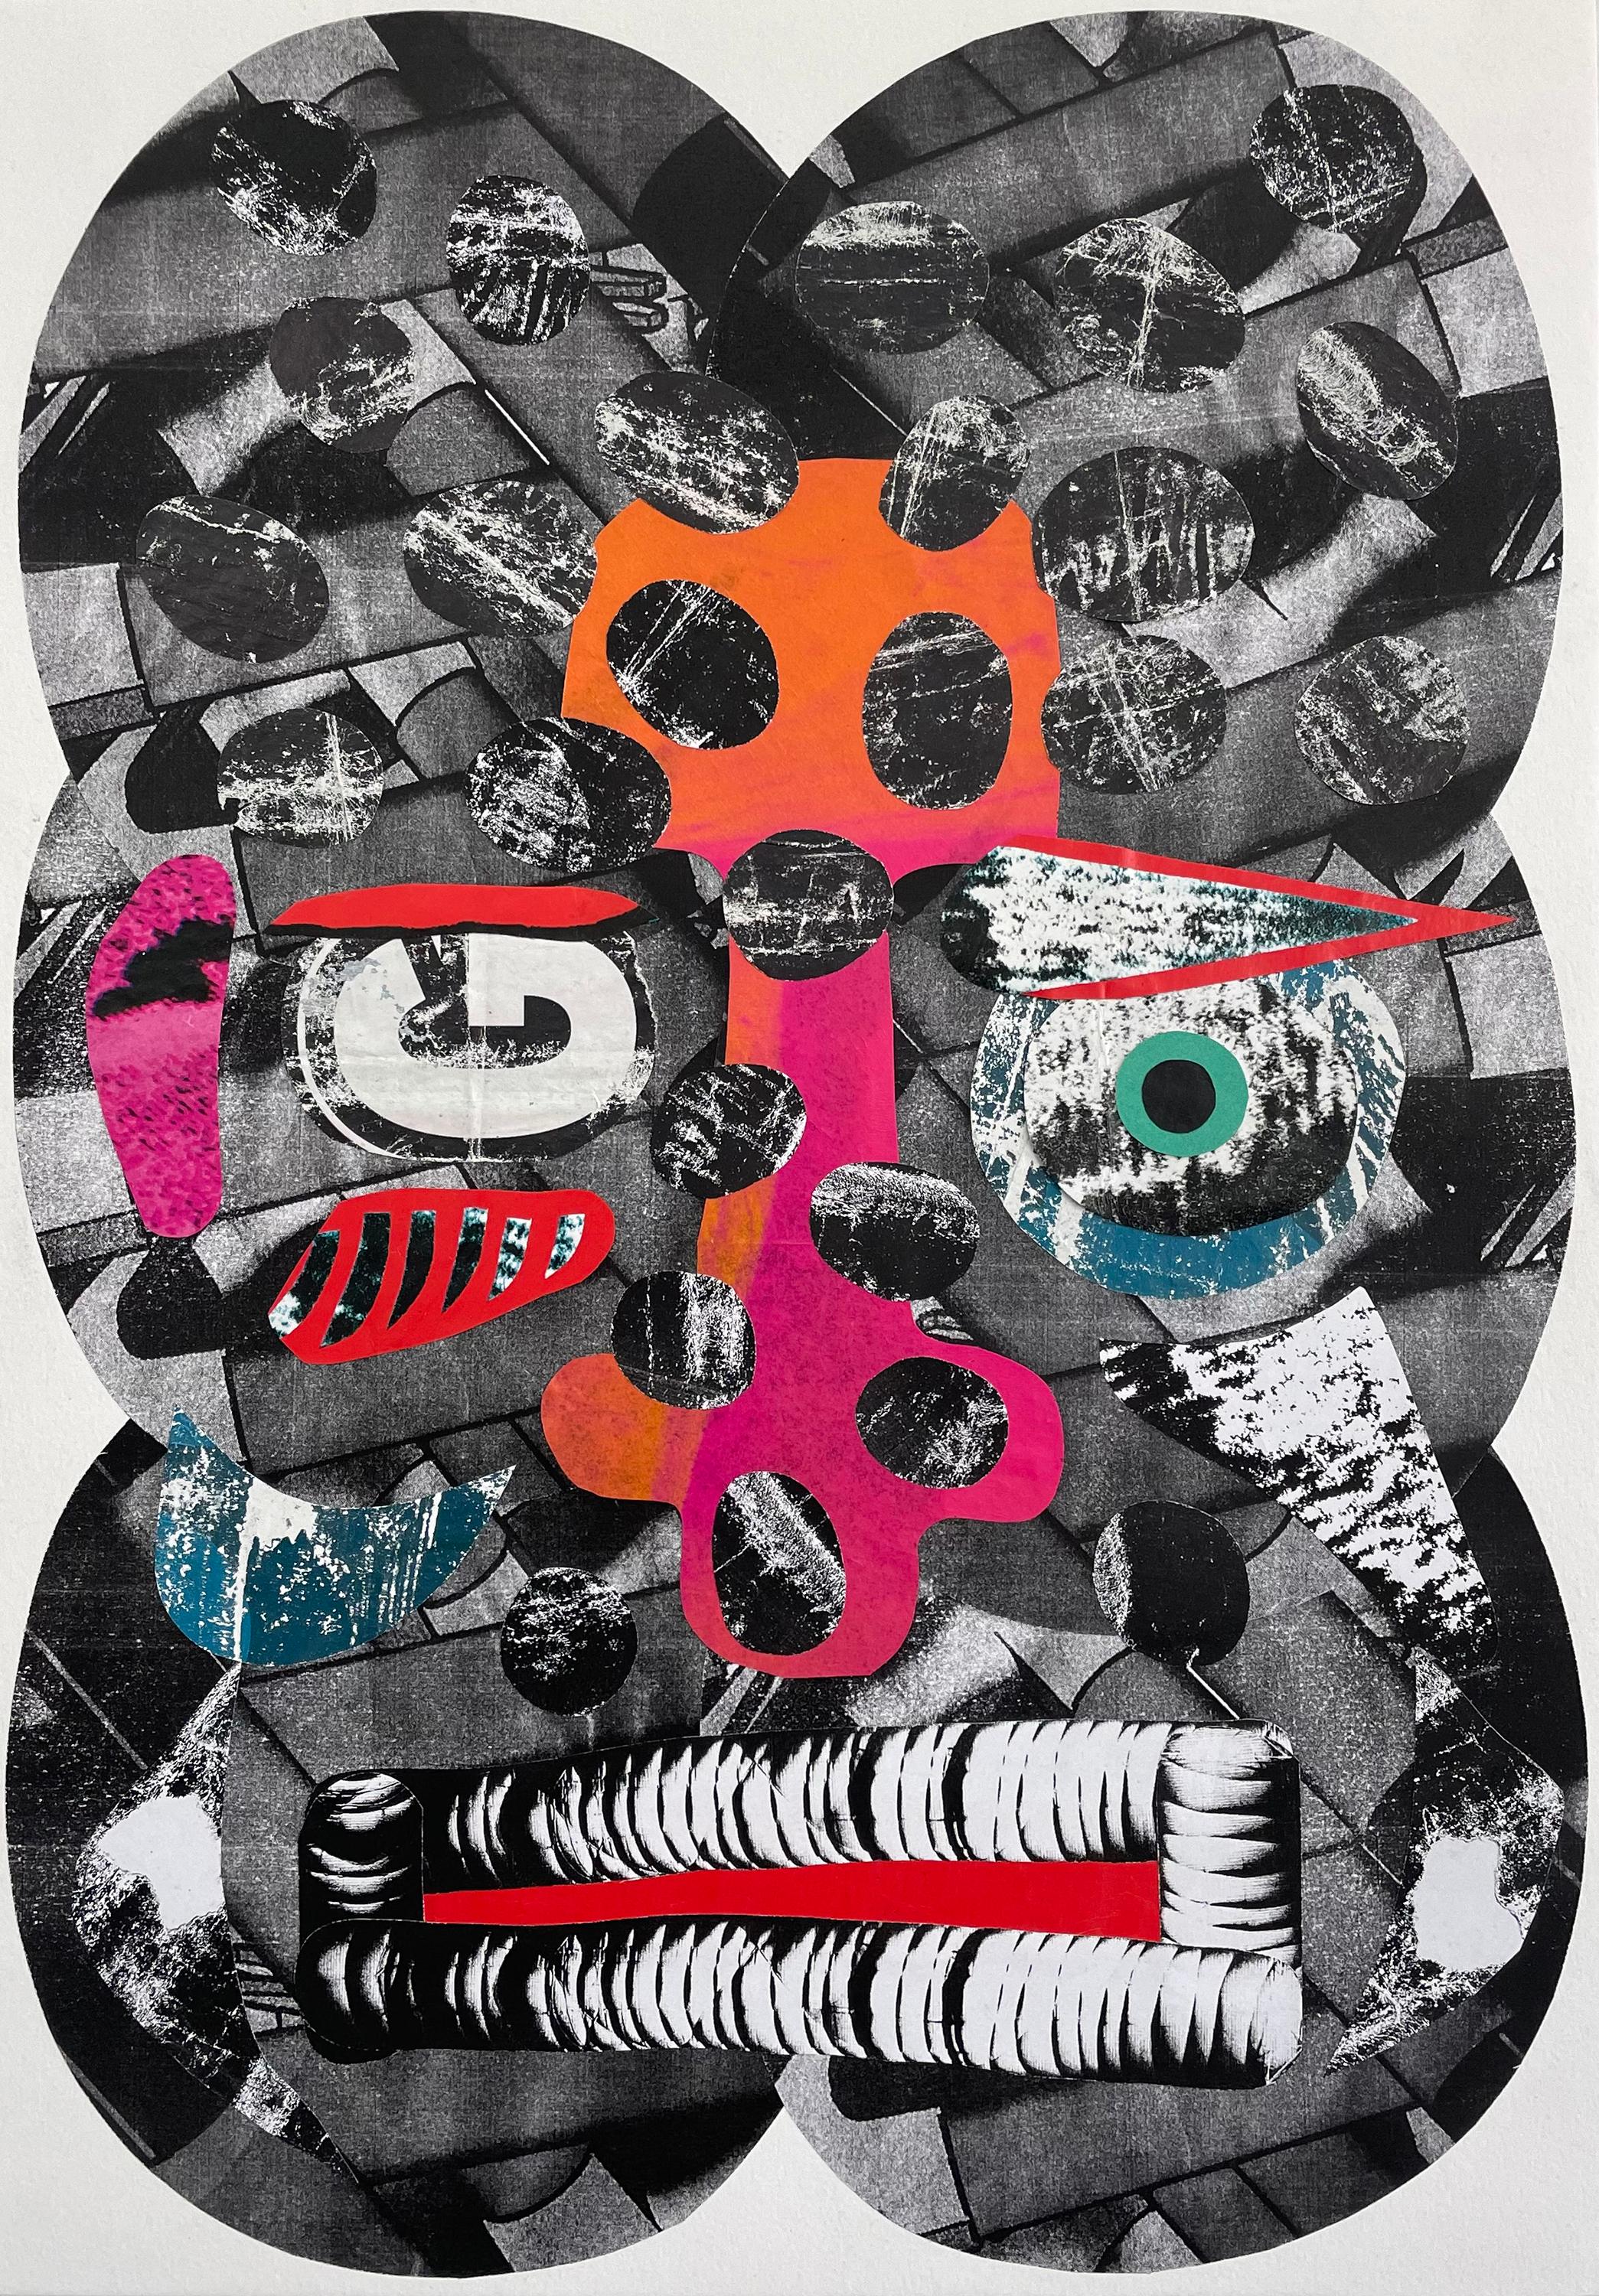 Konrad" - Collage, abstraktes Porträt, gefundenes Papier, schwarz-weiß, Surrealismus – Mixed Media Art von Esteban Patino